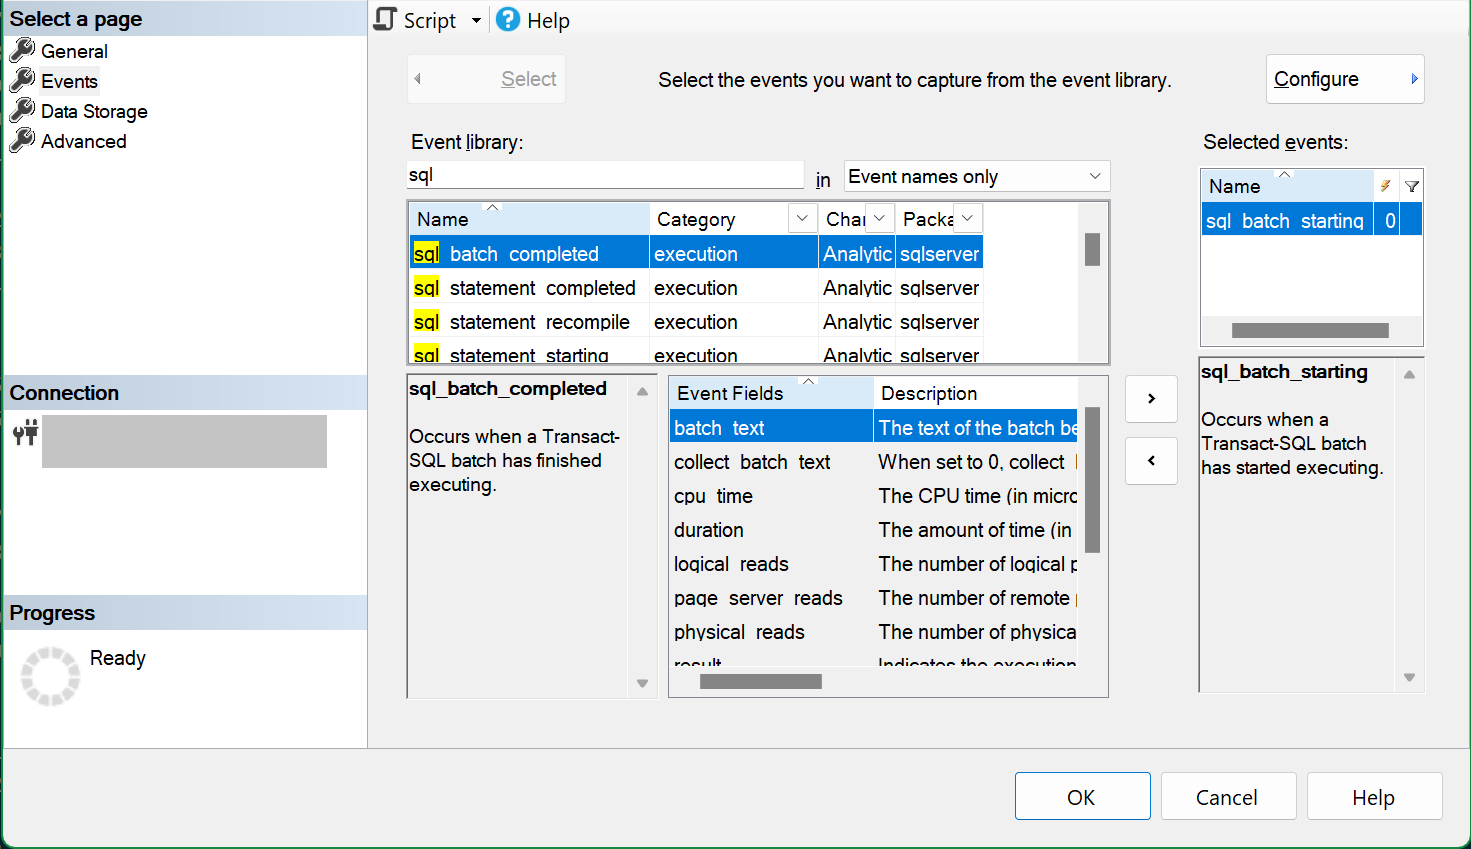 sql_batch_starting イベントが選択されているイベント選択ページを示す [新しいセッション SSMS] ダイアログのスクリーンショット。